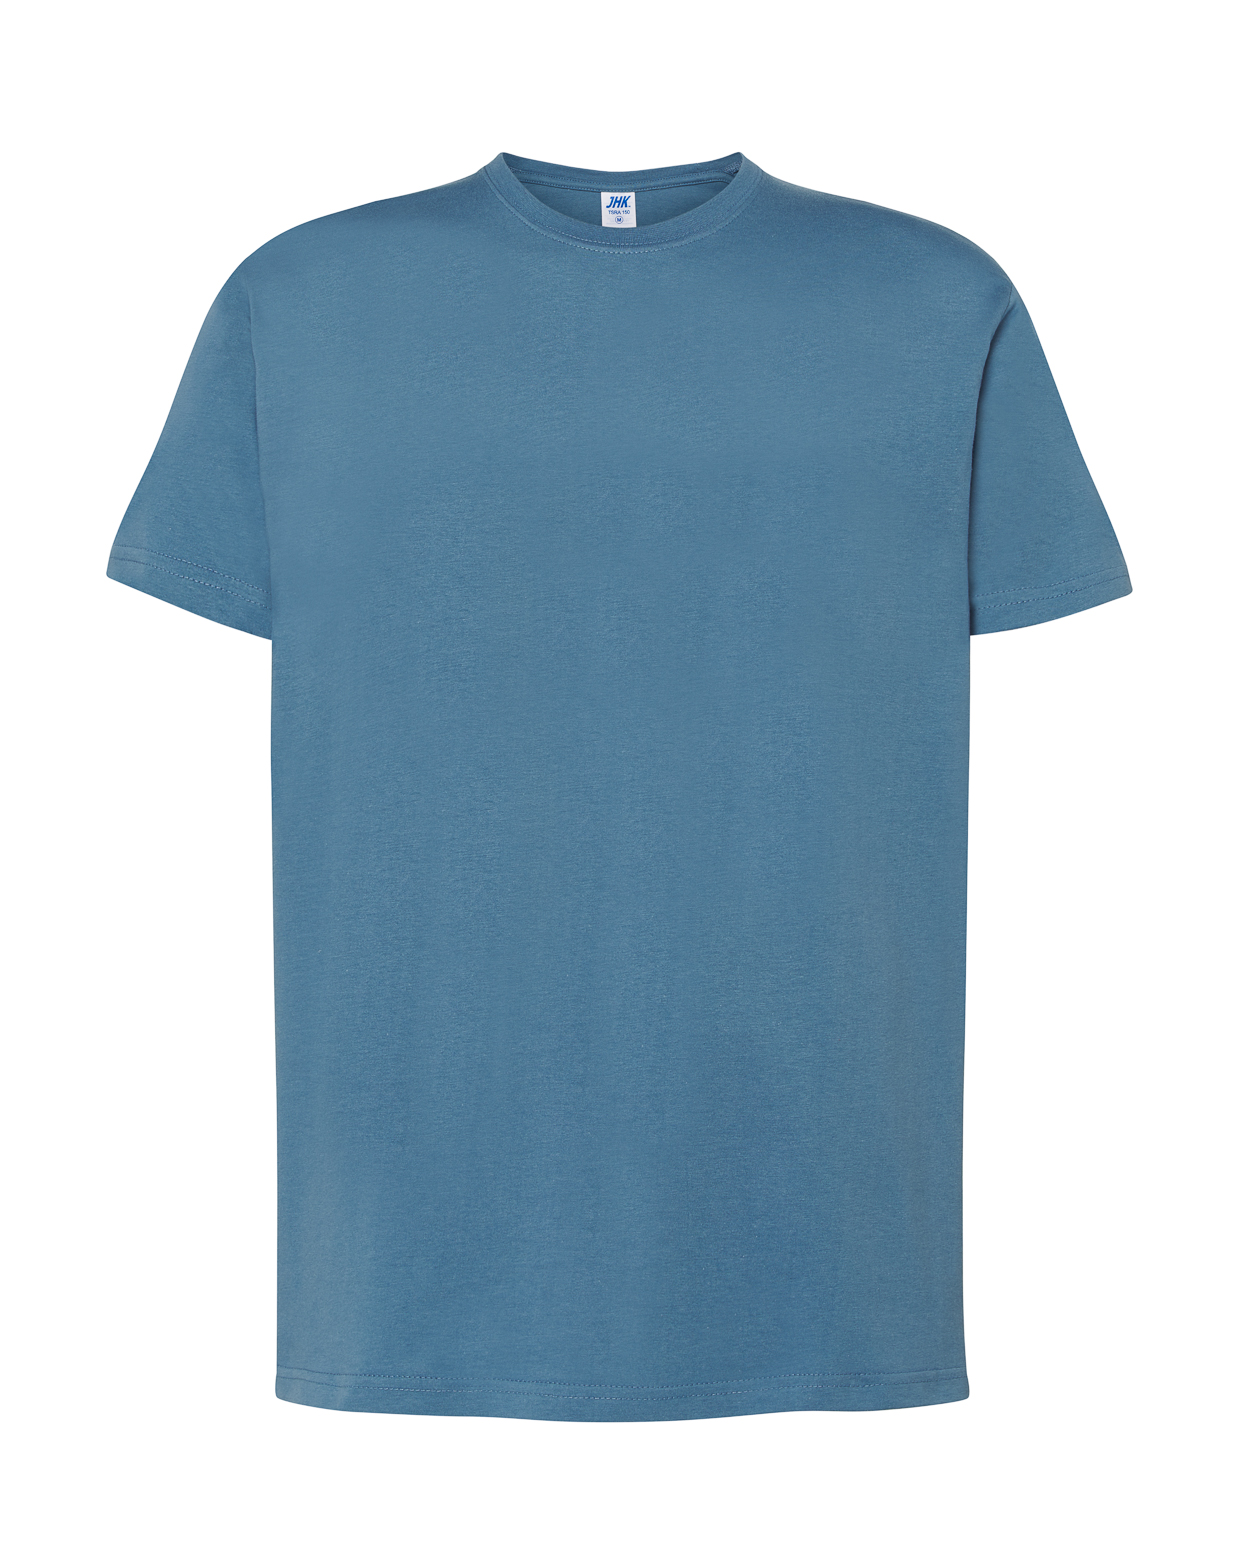 JHK T-Shirt  Man Regular T-Shirt [TSRA150]